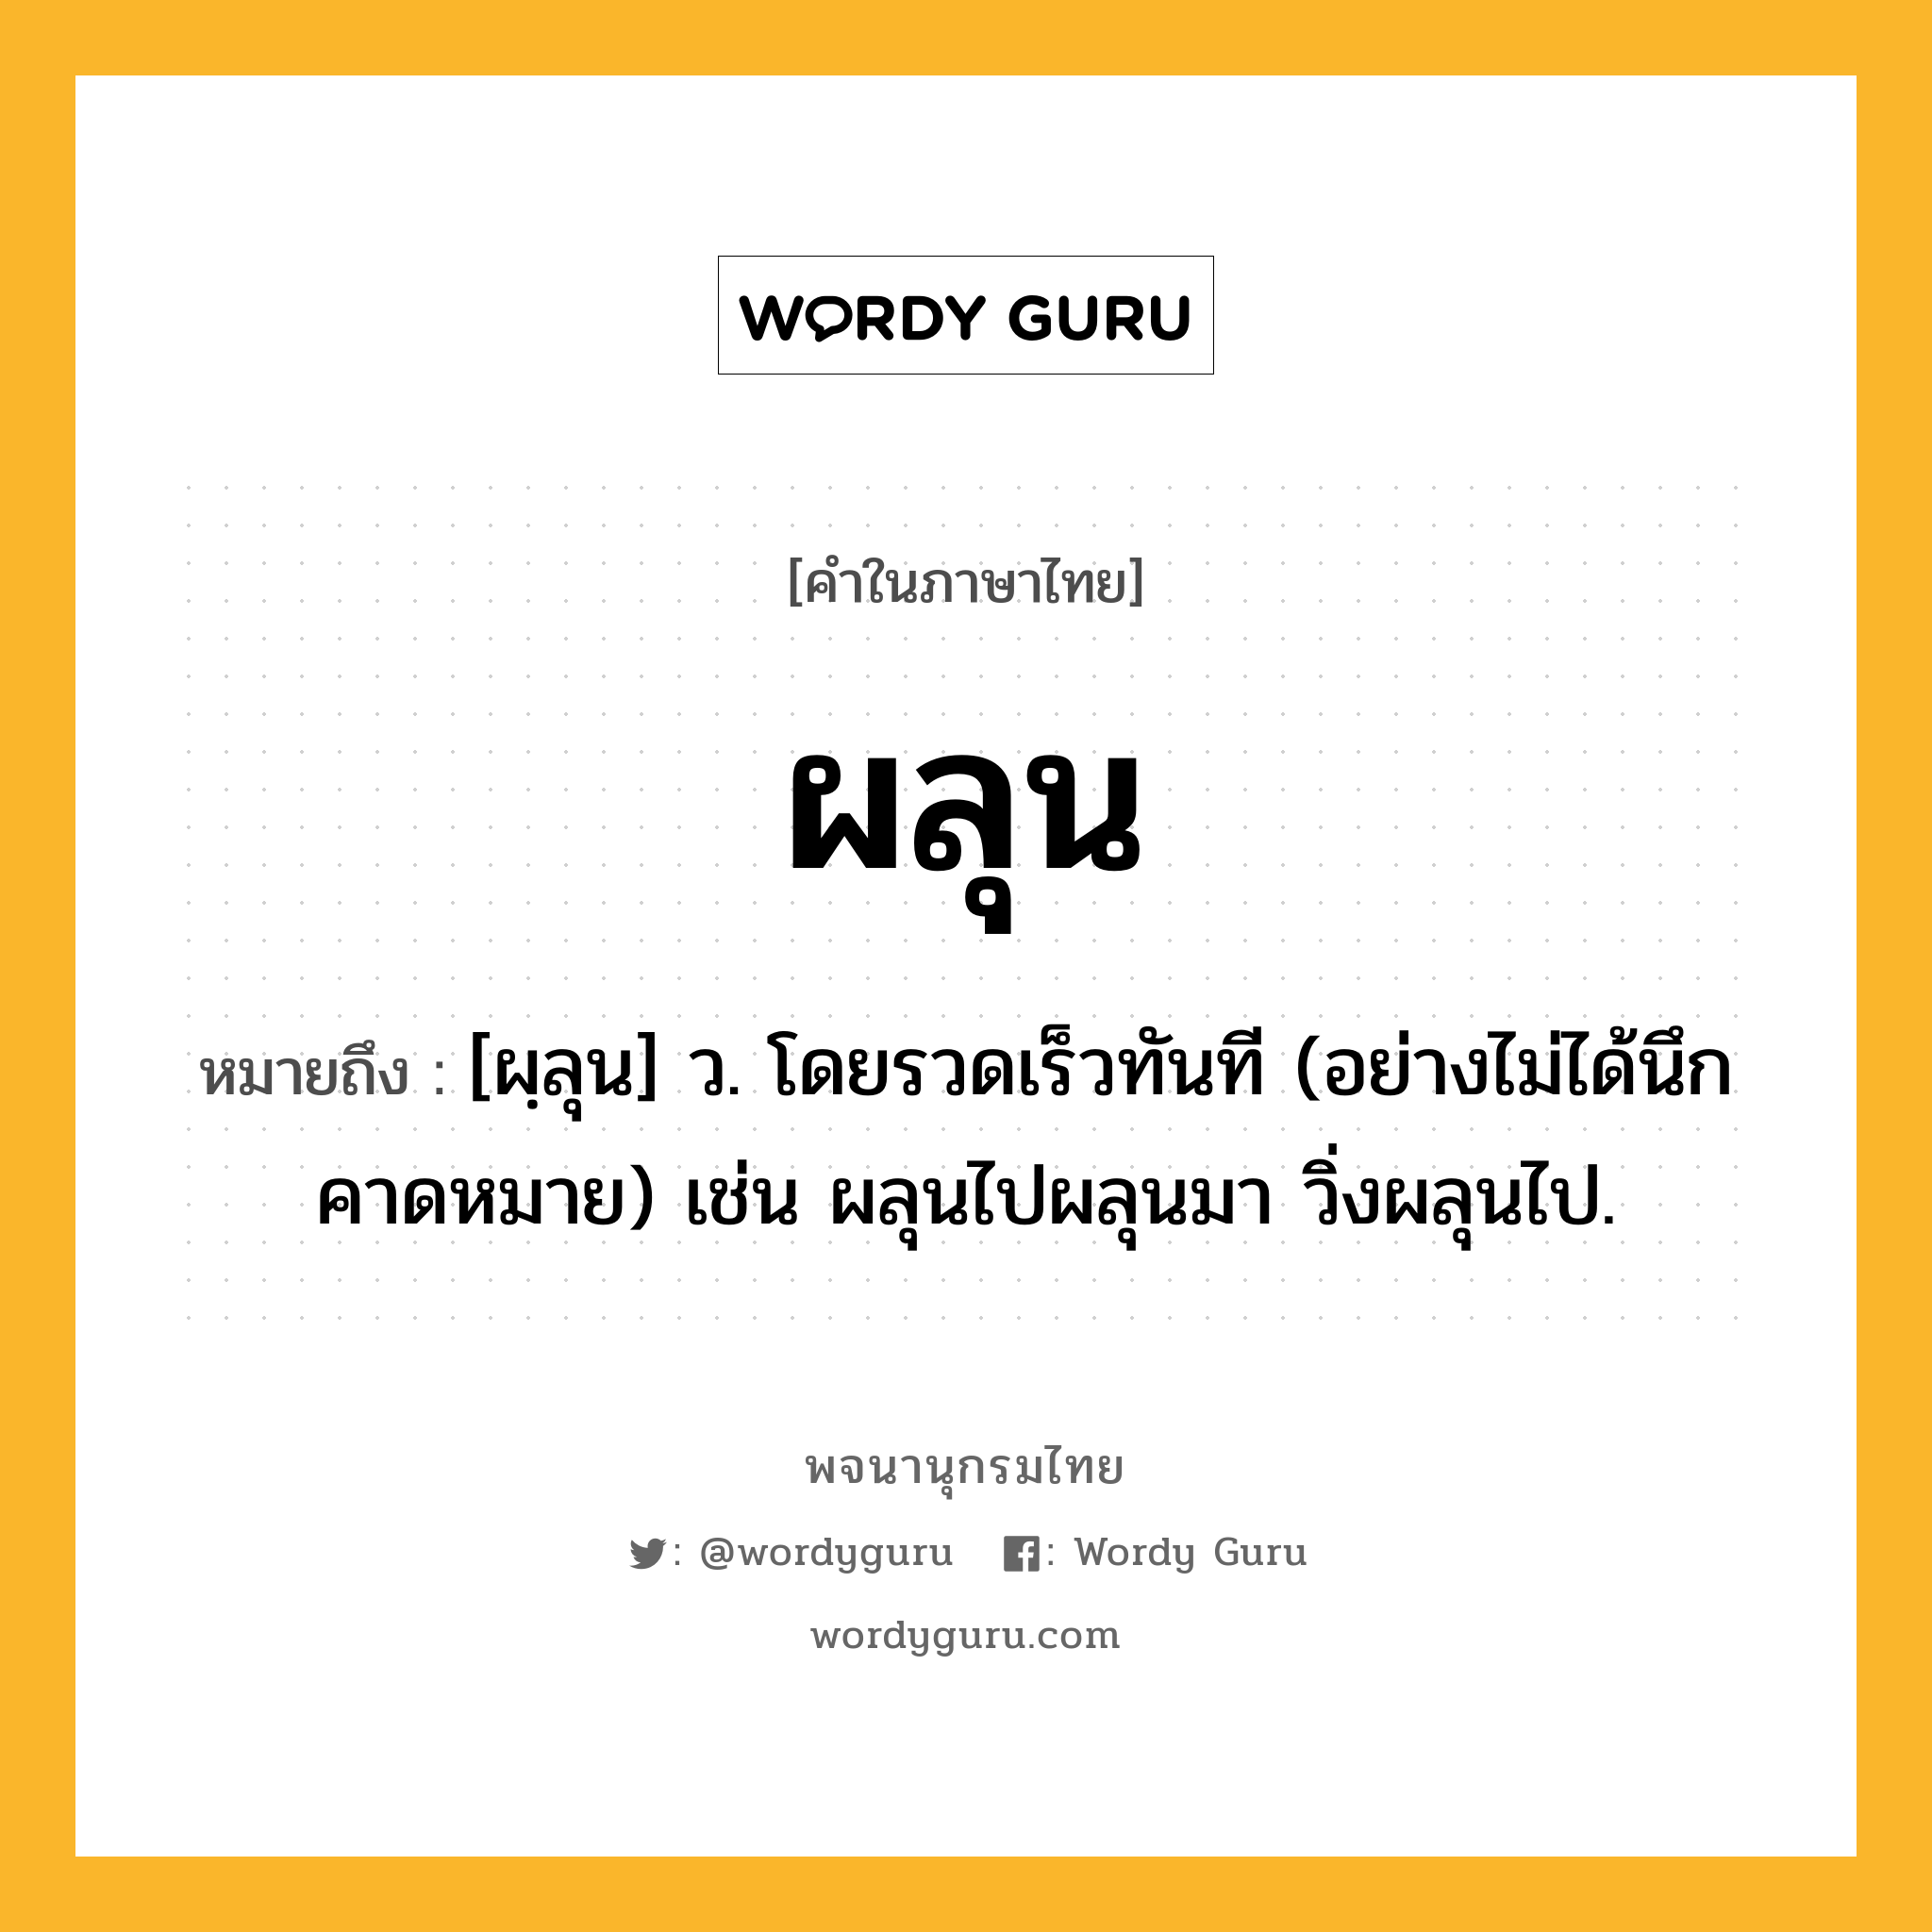 ผลุน หมายถึงอะไร?, คำในภาษาไทย ผลุน หมายถึง [ผฺลุน] ว. โดยรวดเร็วทันที (อย่างไม่ได้นึกคาดหมาย) เช่น ผลุนไปผลุนมา วิ่งผลุนไป.